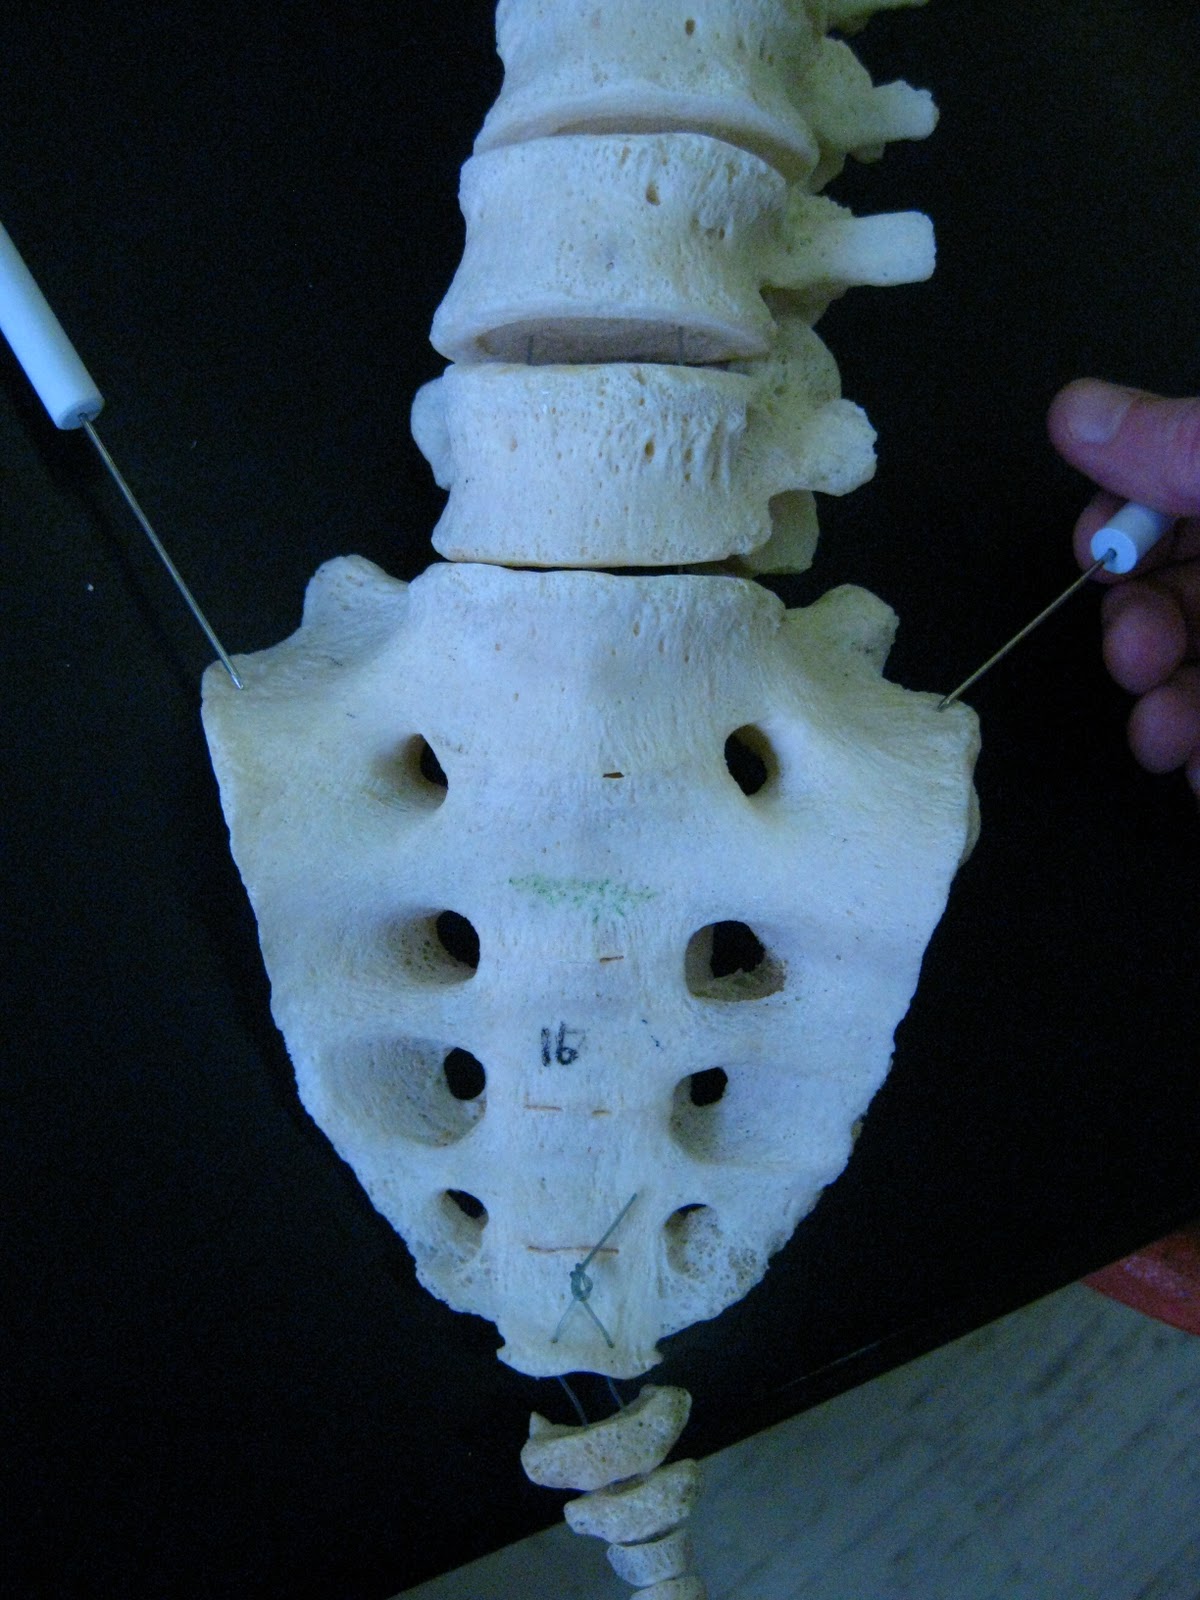 Boned: Human Skeleton - sacrum